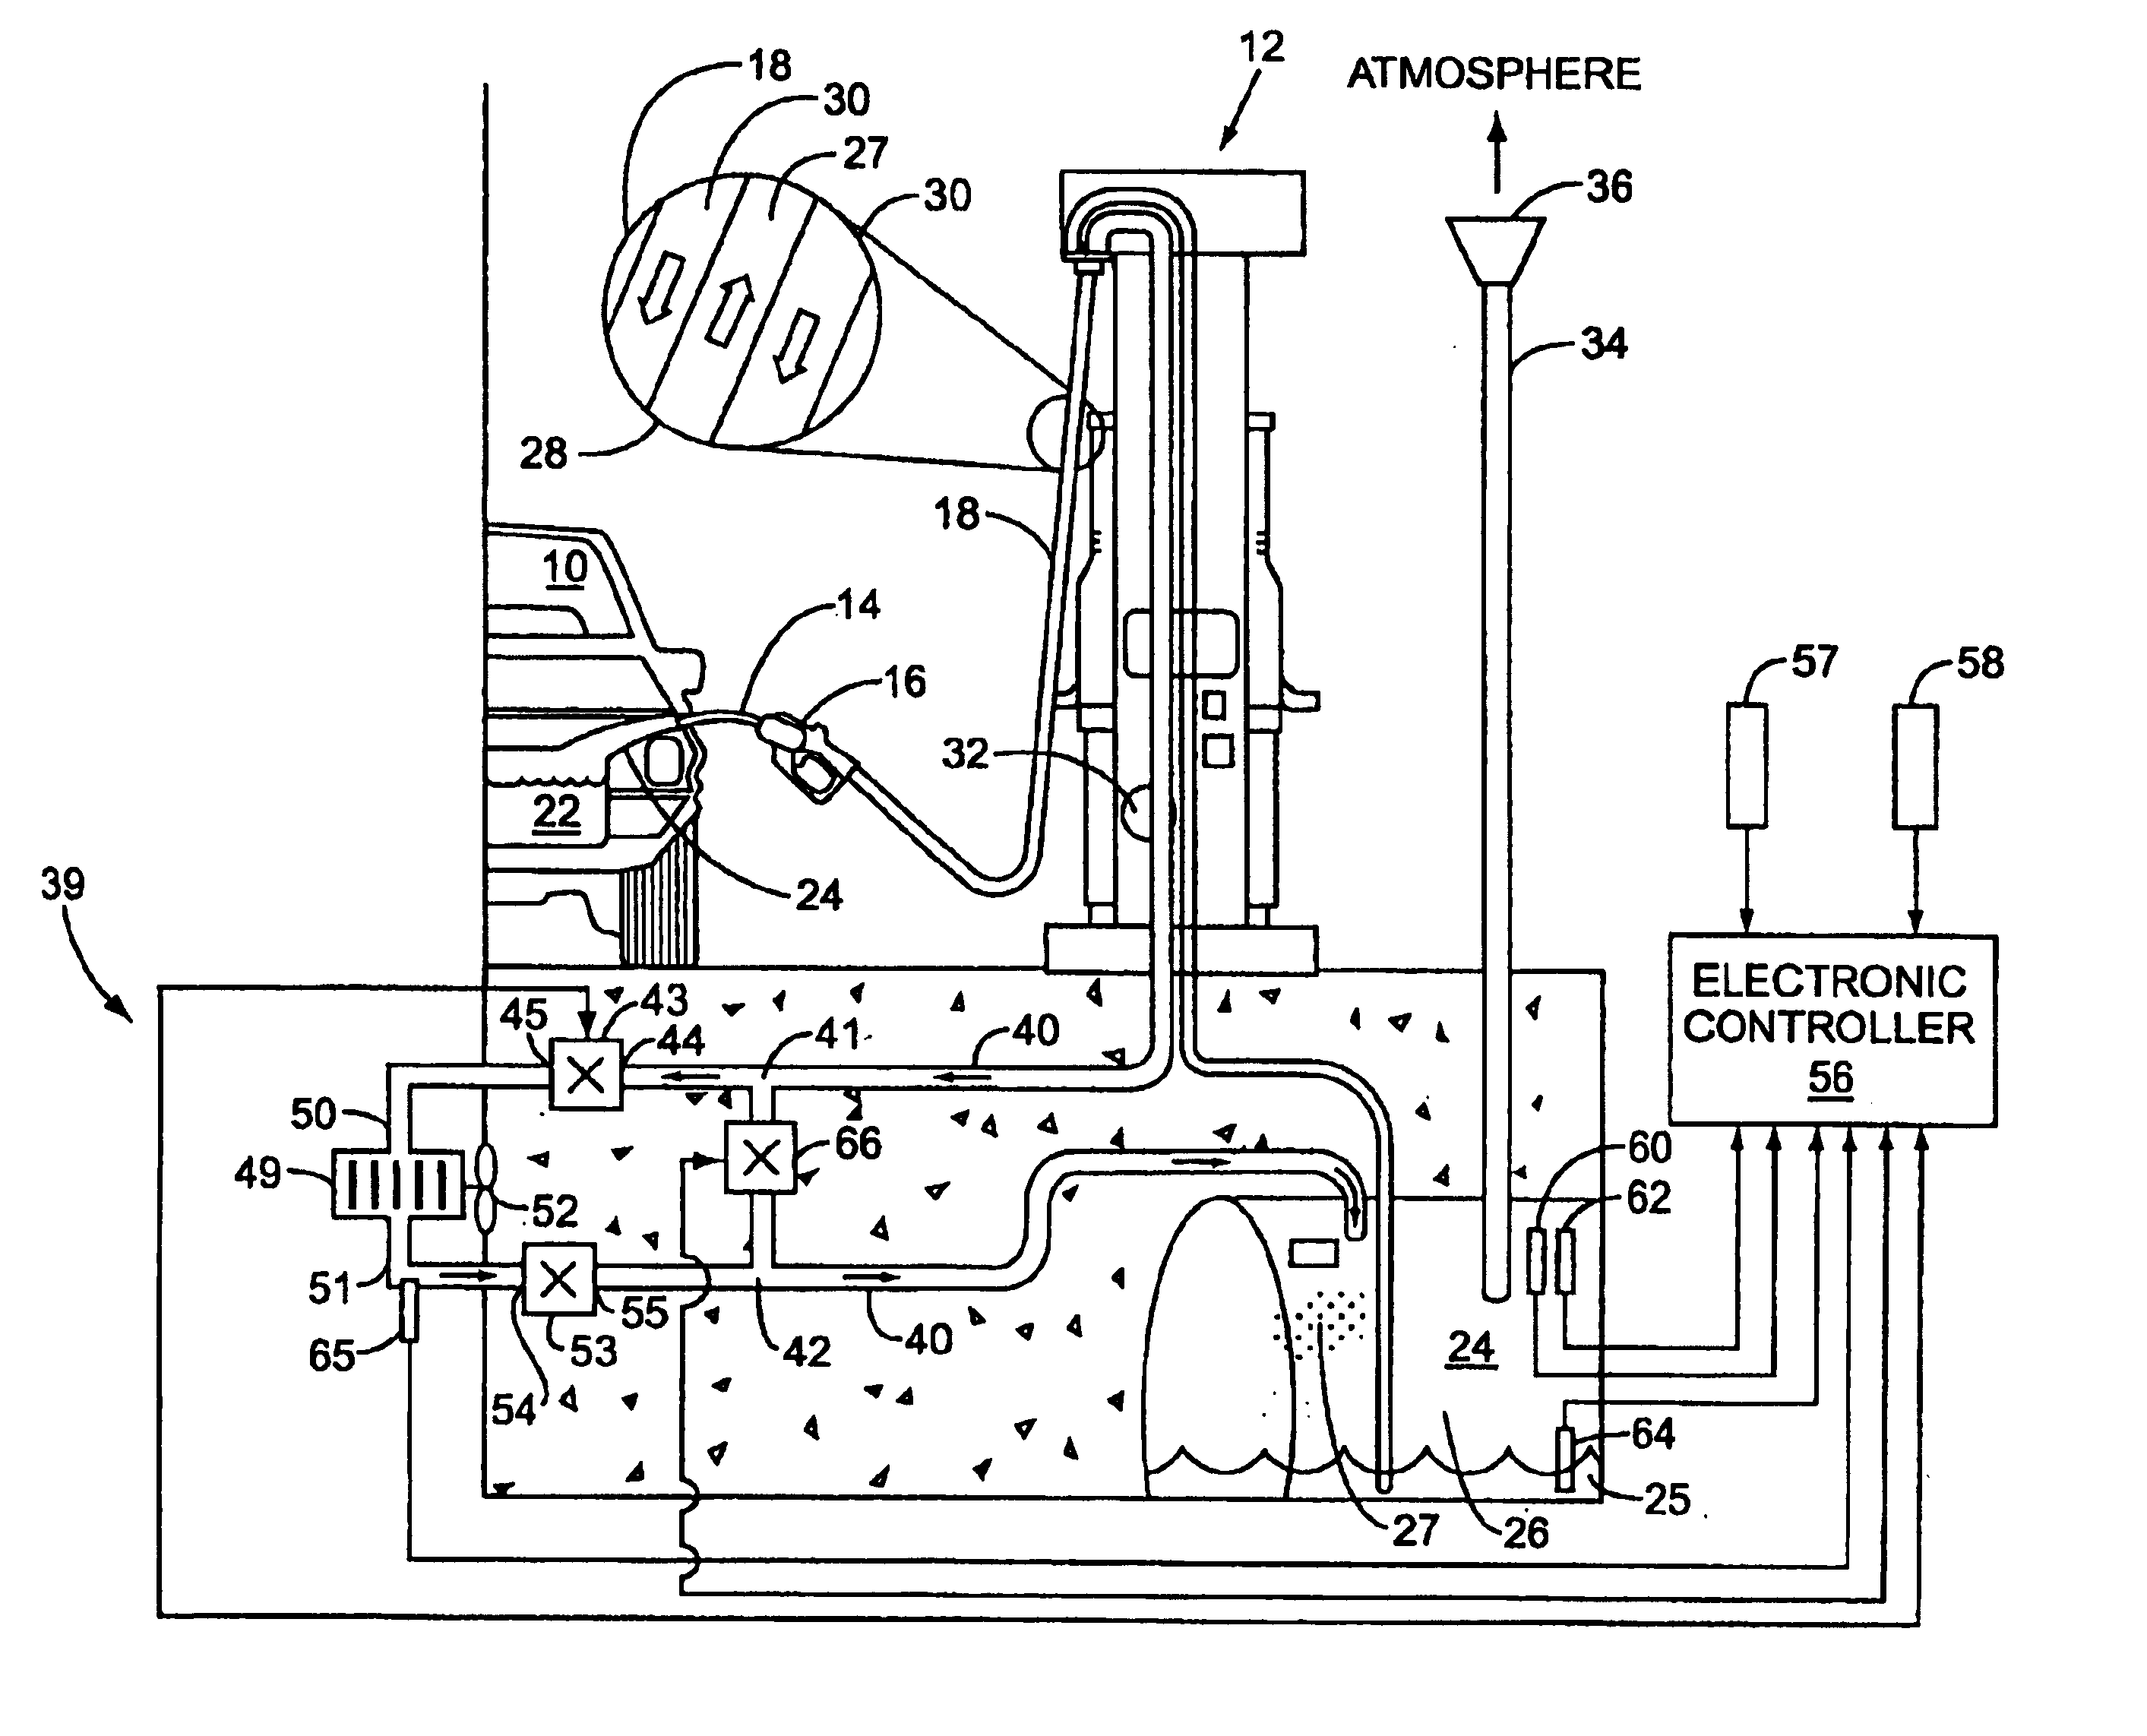 Underground storage tank vapor pressure equalizer